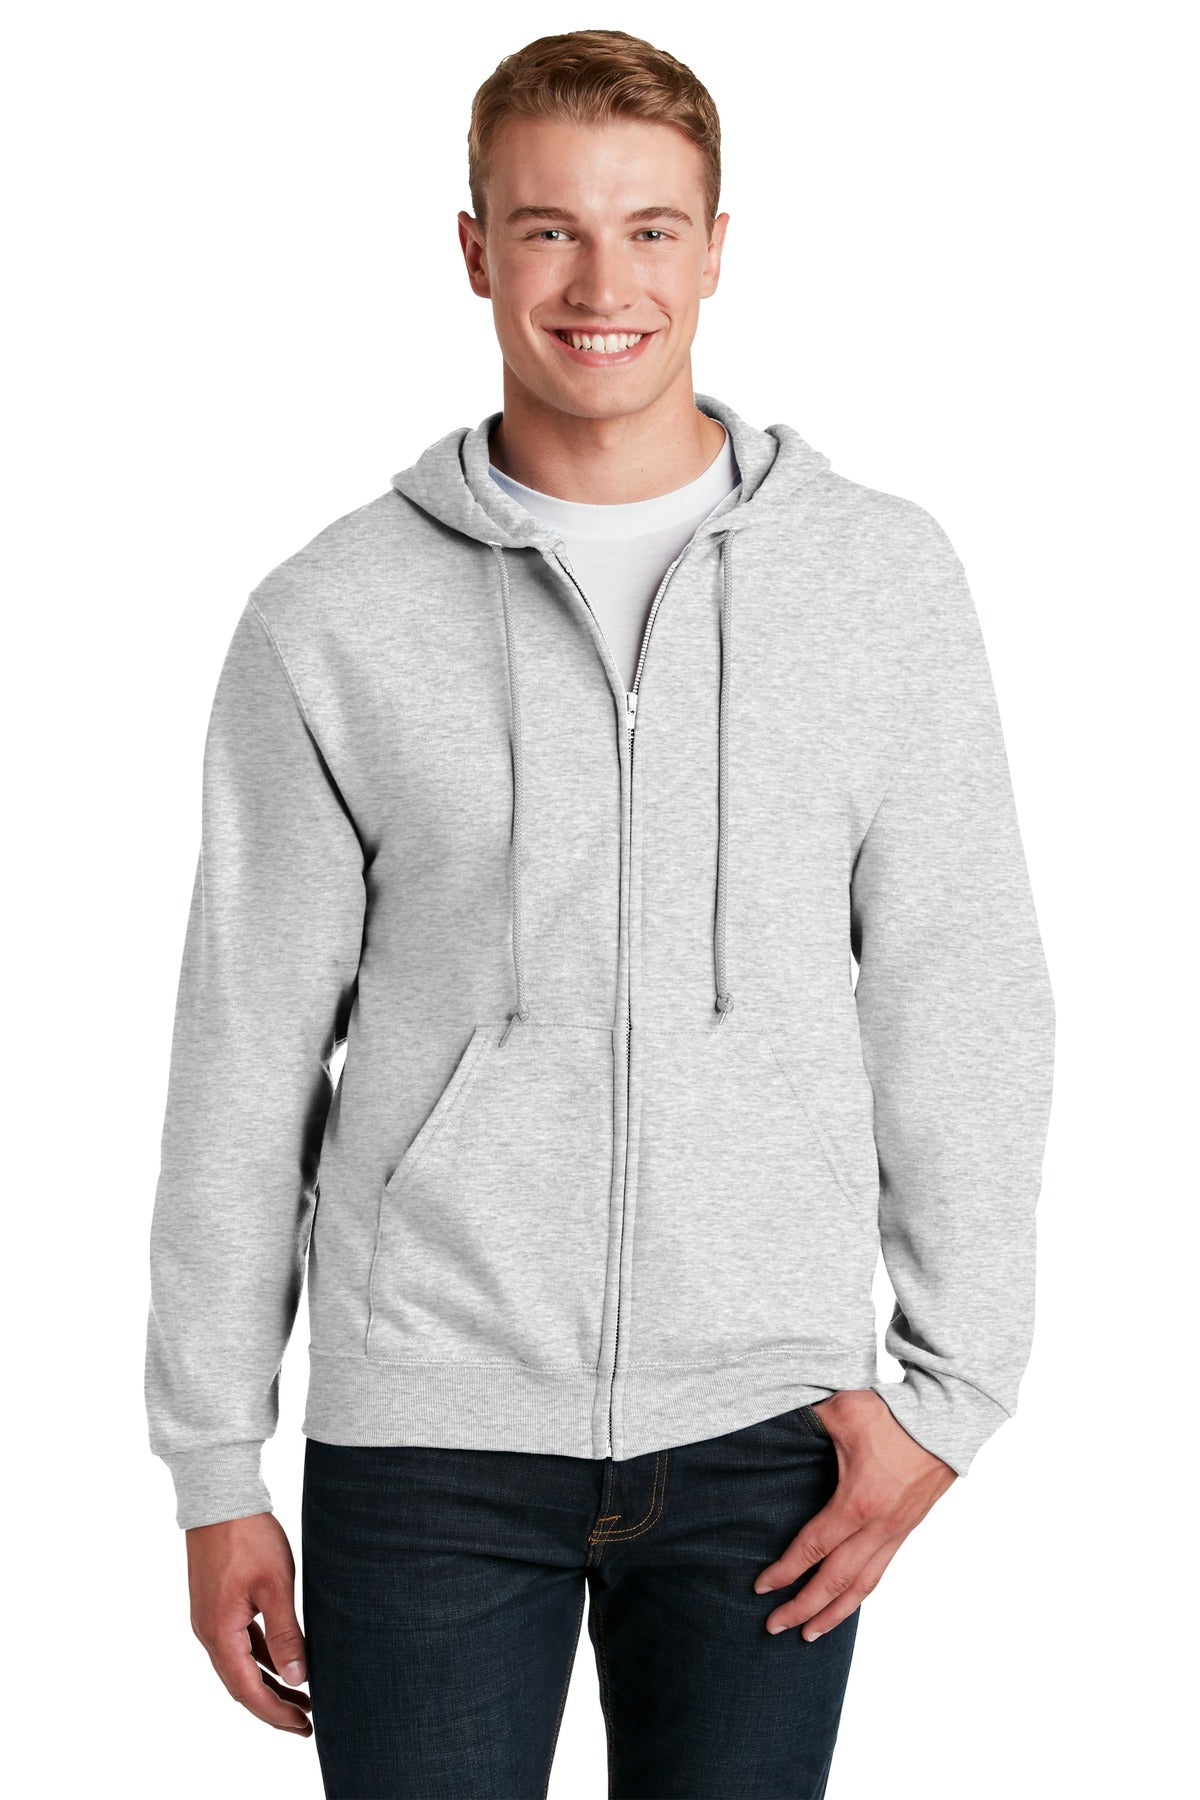 Jerzees® - NuBlend® Full-Zip Hooded Sweatshirt.  993M